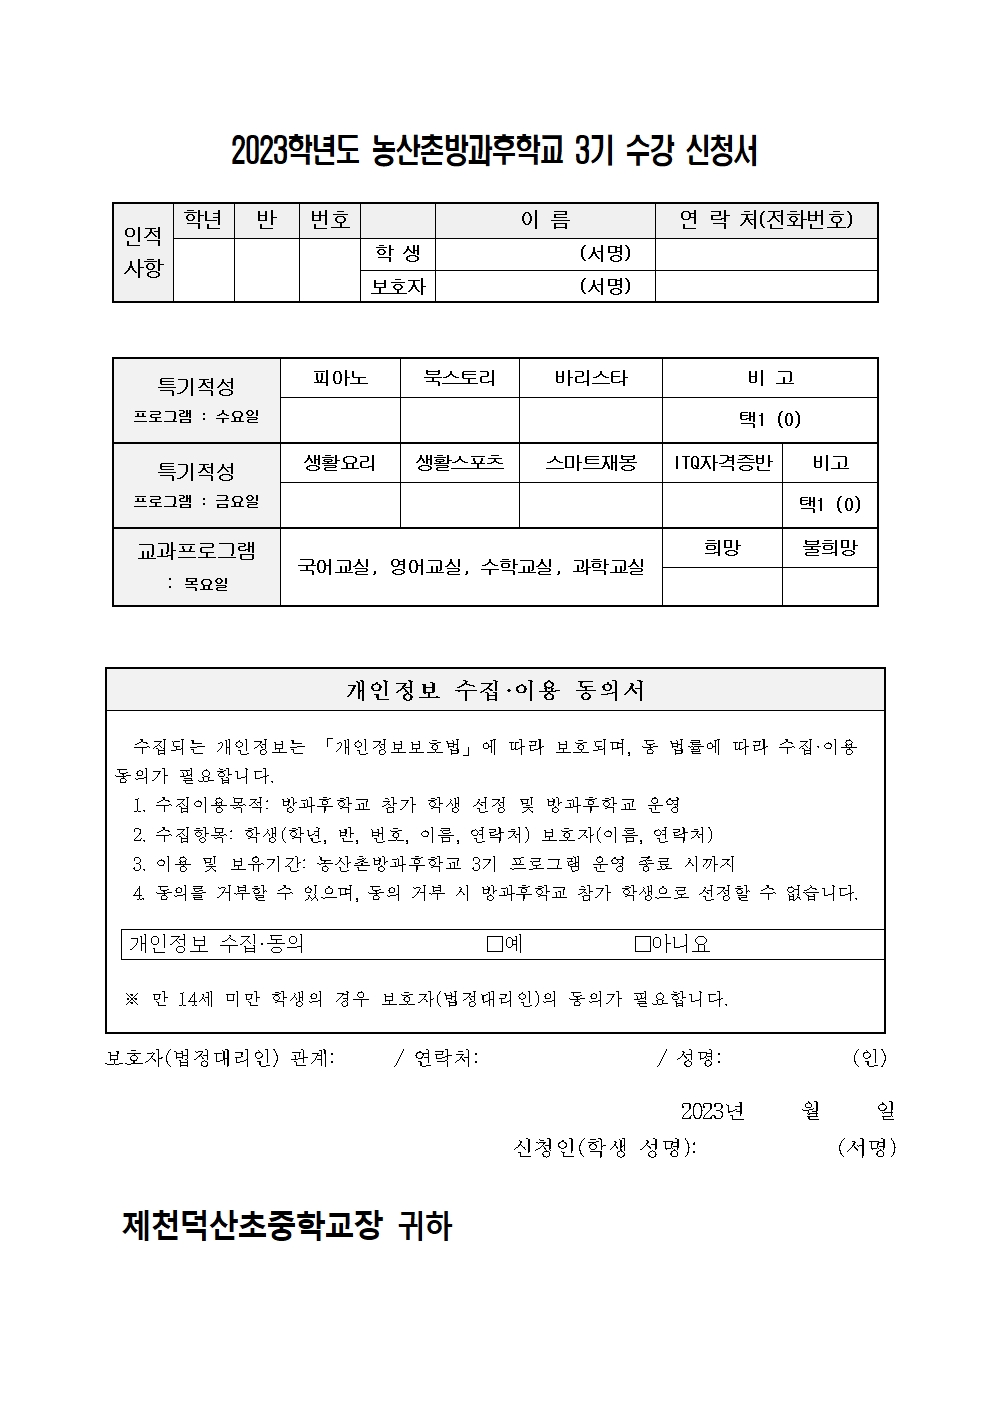 2023. 제천덕산중 농산촌방과후학교 3기 수강 신청 가정통신문002